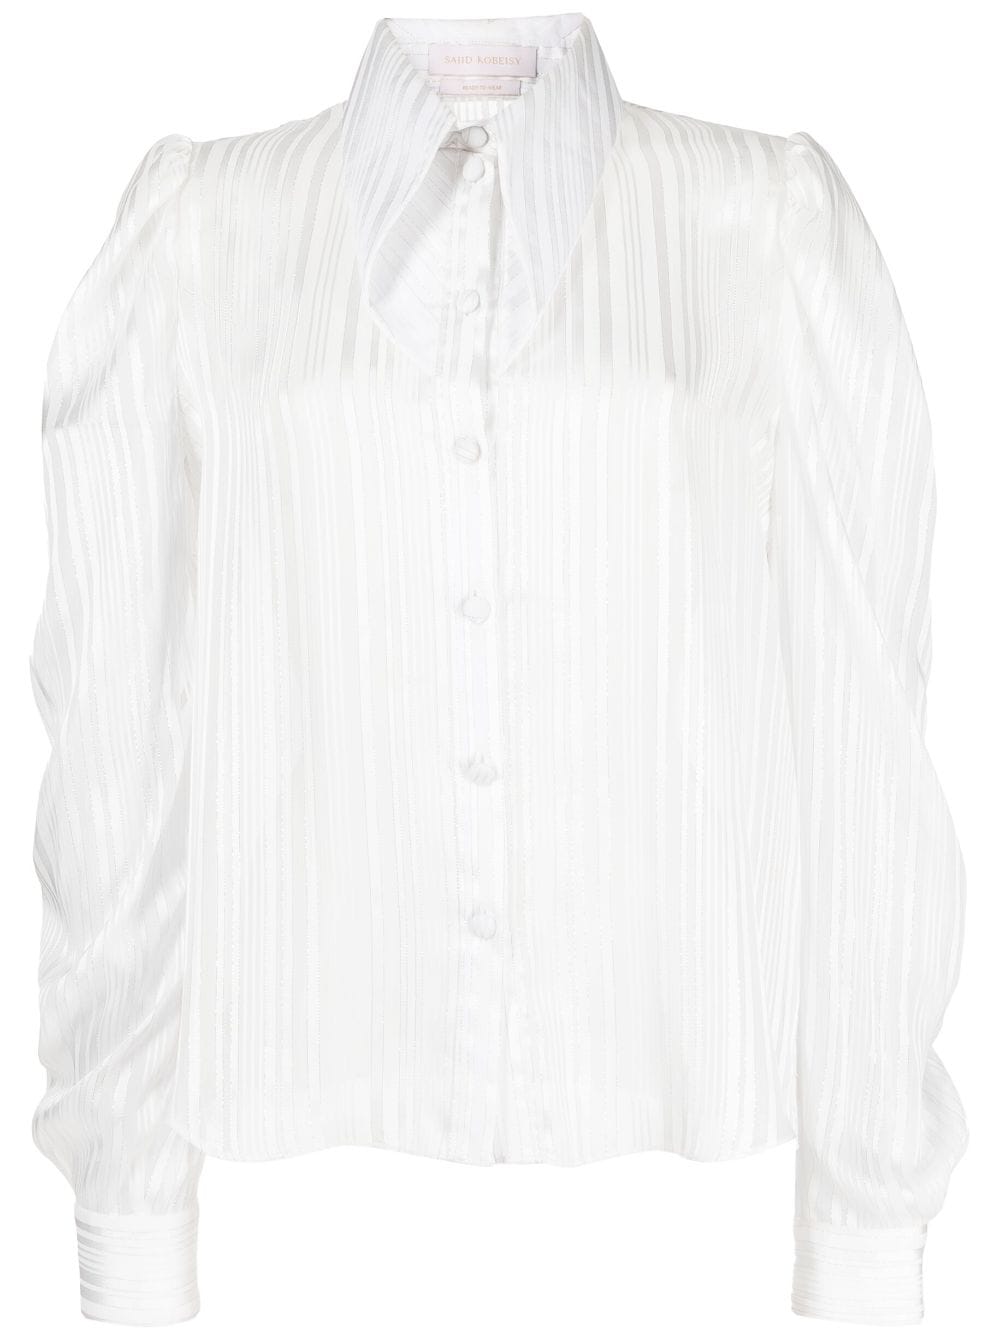 Saiid Kobeisy Hemd mit spitzem Kragen - Weiß von Saiid Kobeisy